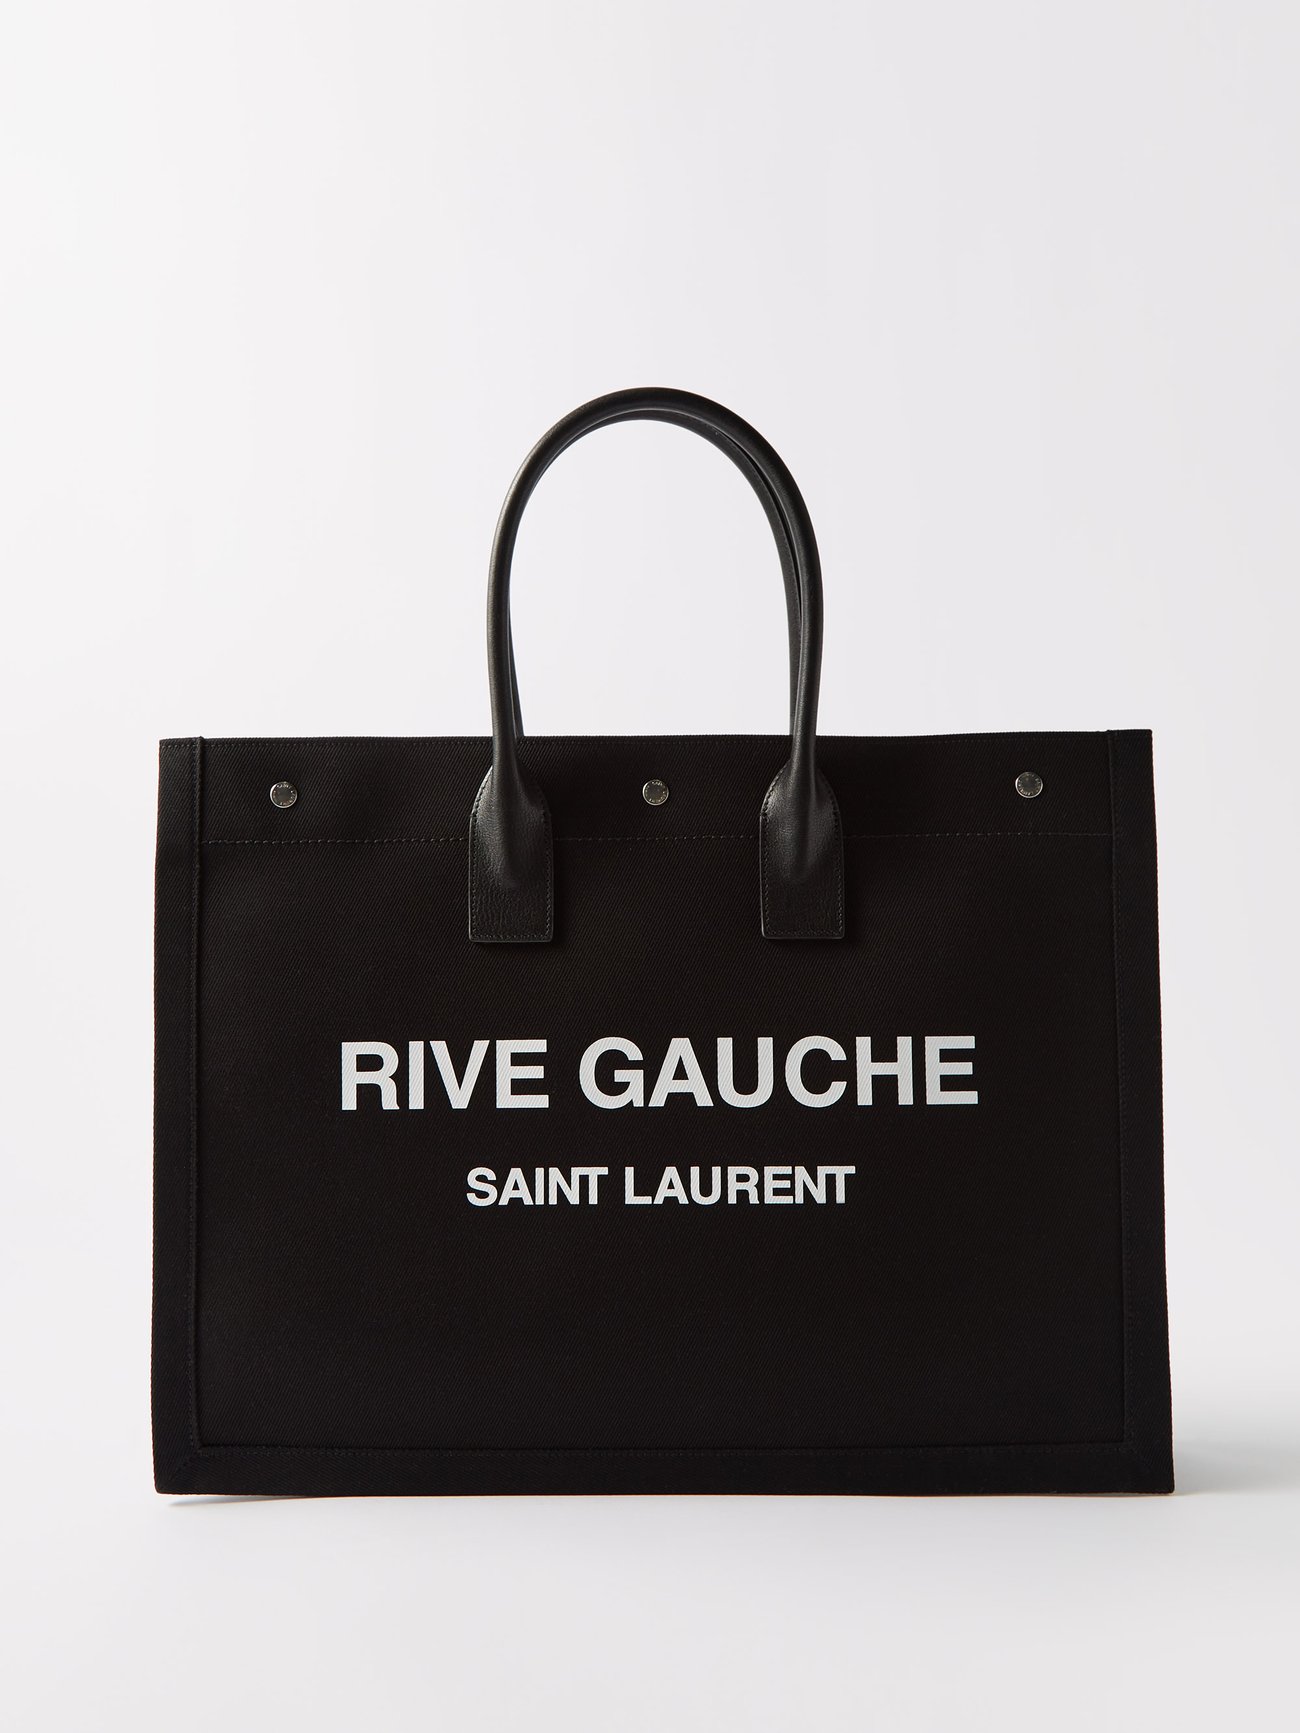 Saint Laurent and Rive Gauche: My Latest Travel Souvenir